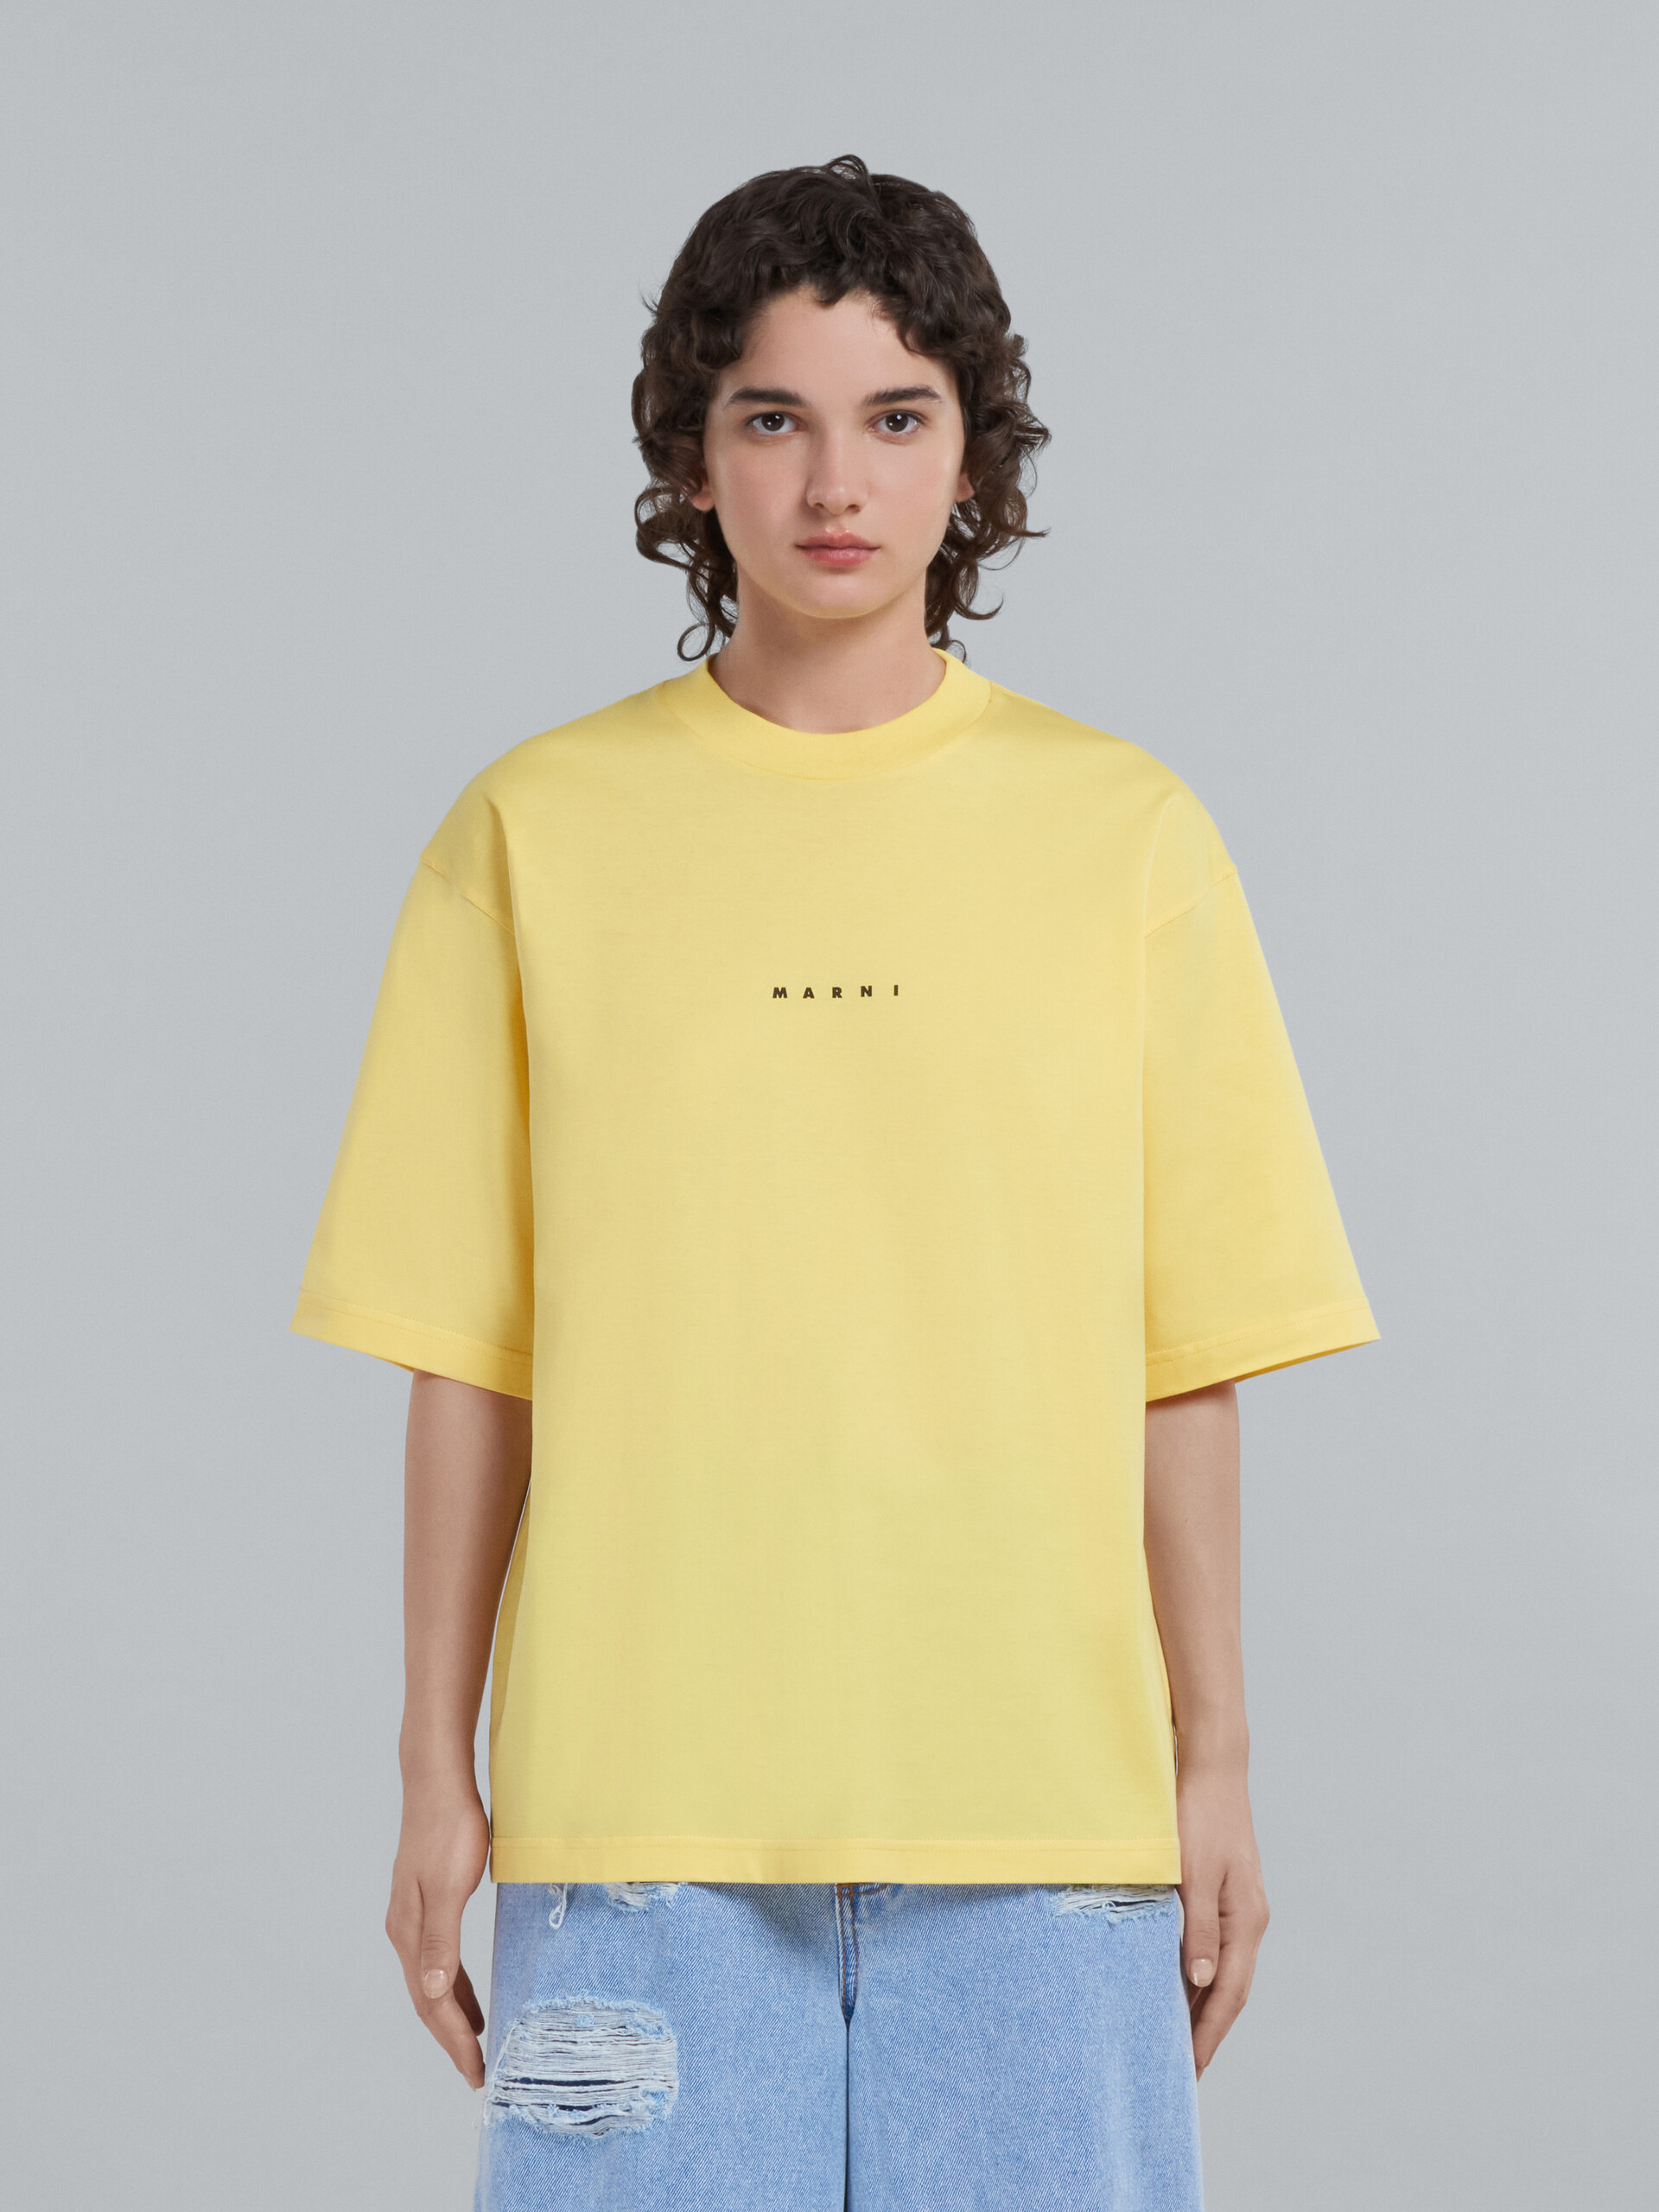 T-shirt en coton biologique jaune avec logo - T-shirts - Image 2